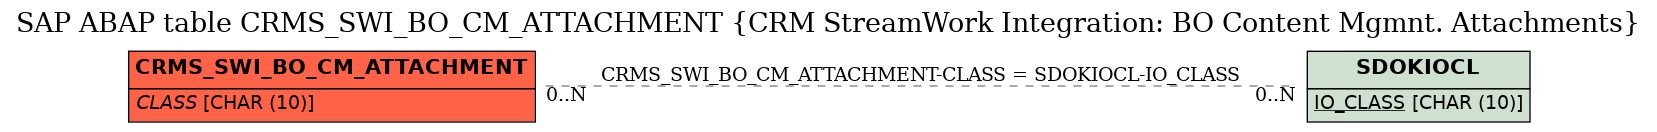 E-R Diagram for table CRMS_SWI_BO_CM_ATTACHMENT (CRM StreamWork Integration: BO Content Mgmnt. Attachments)